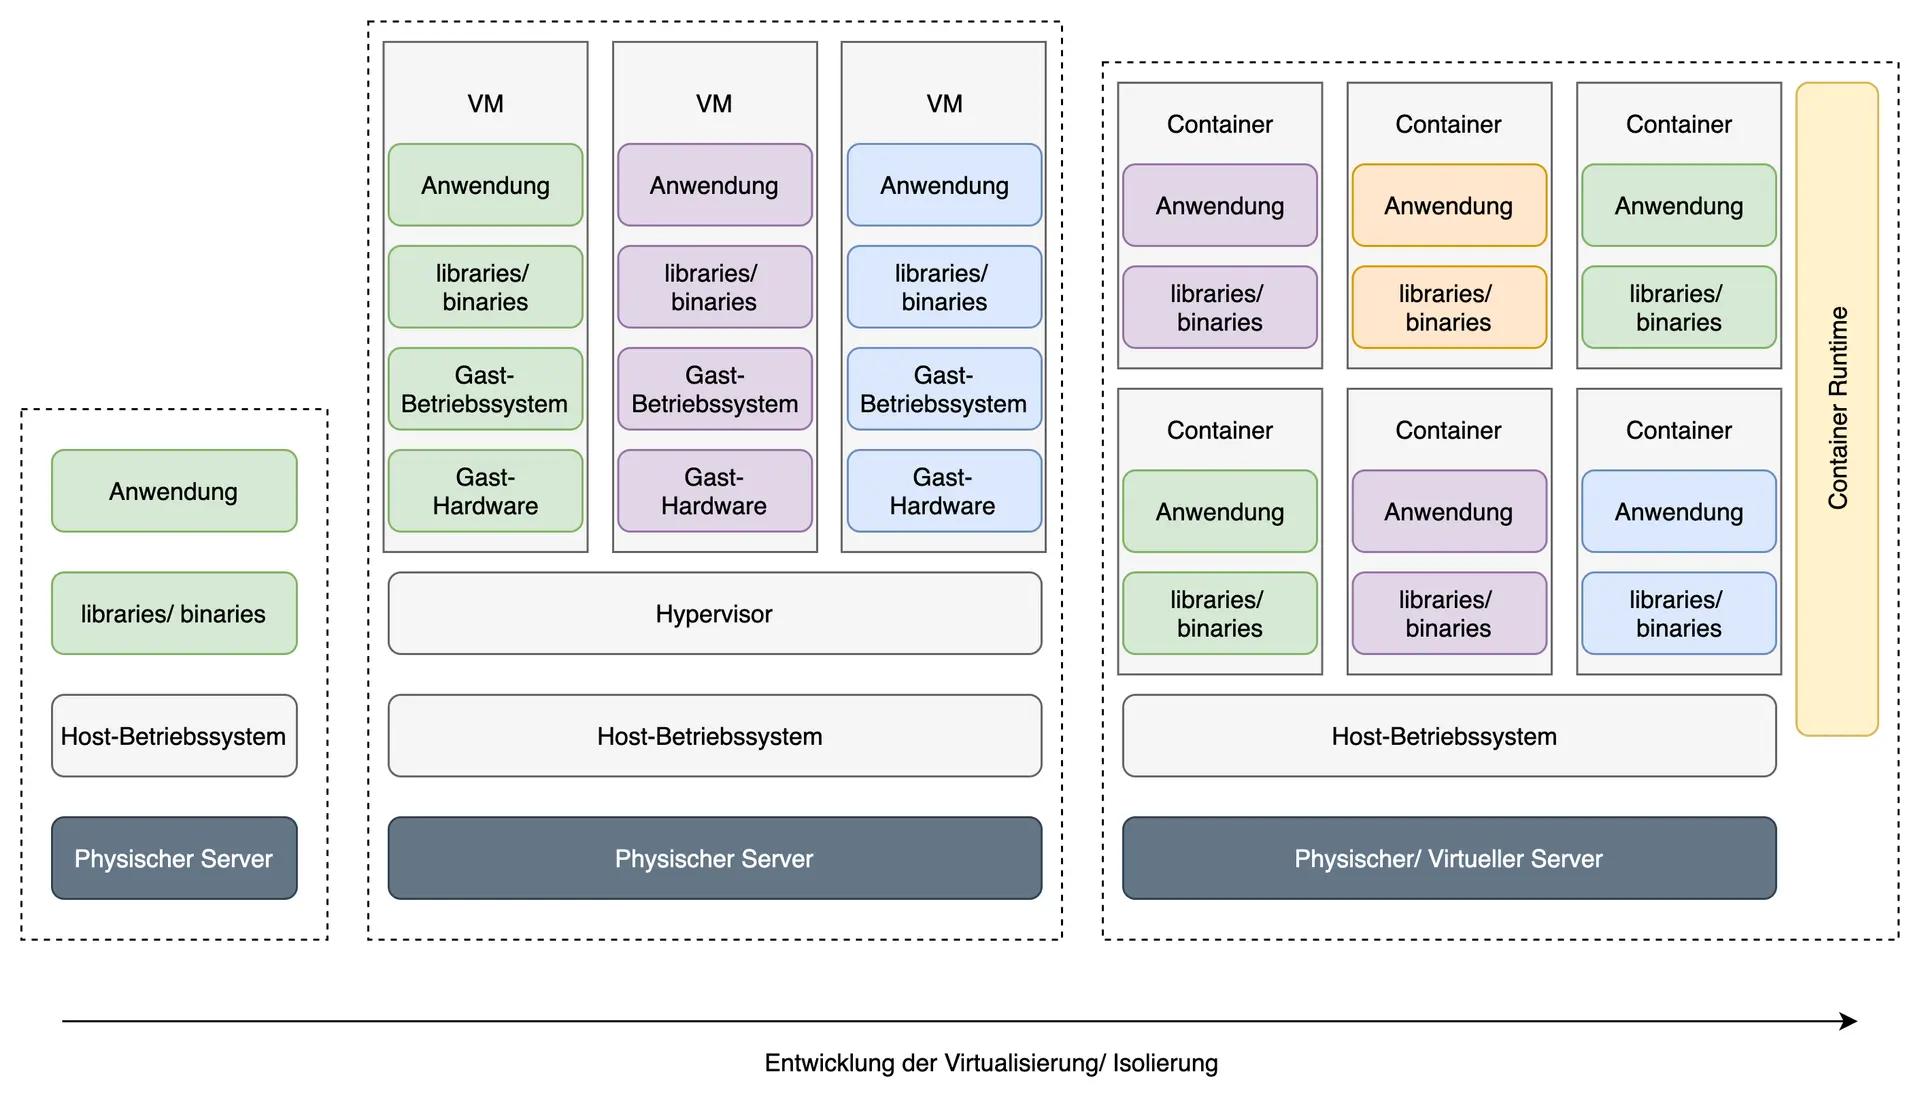 Diagramm der Virtualisierungsentwicklung: Vergleich von traditionellen VMs mit modernen Containertechnologien auf physikalischen und virtuellen Servern.